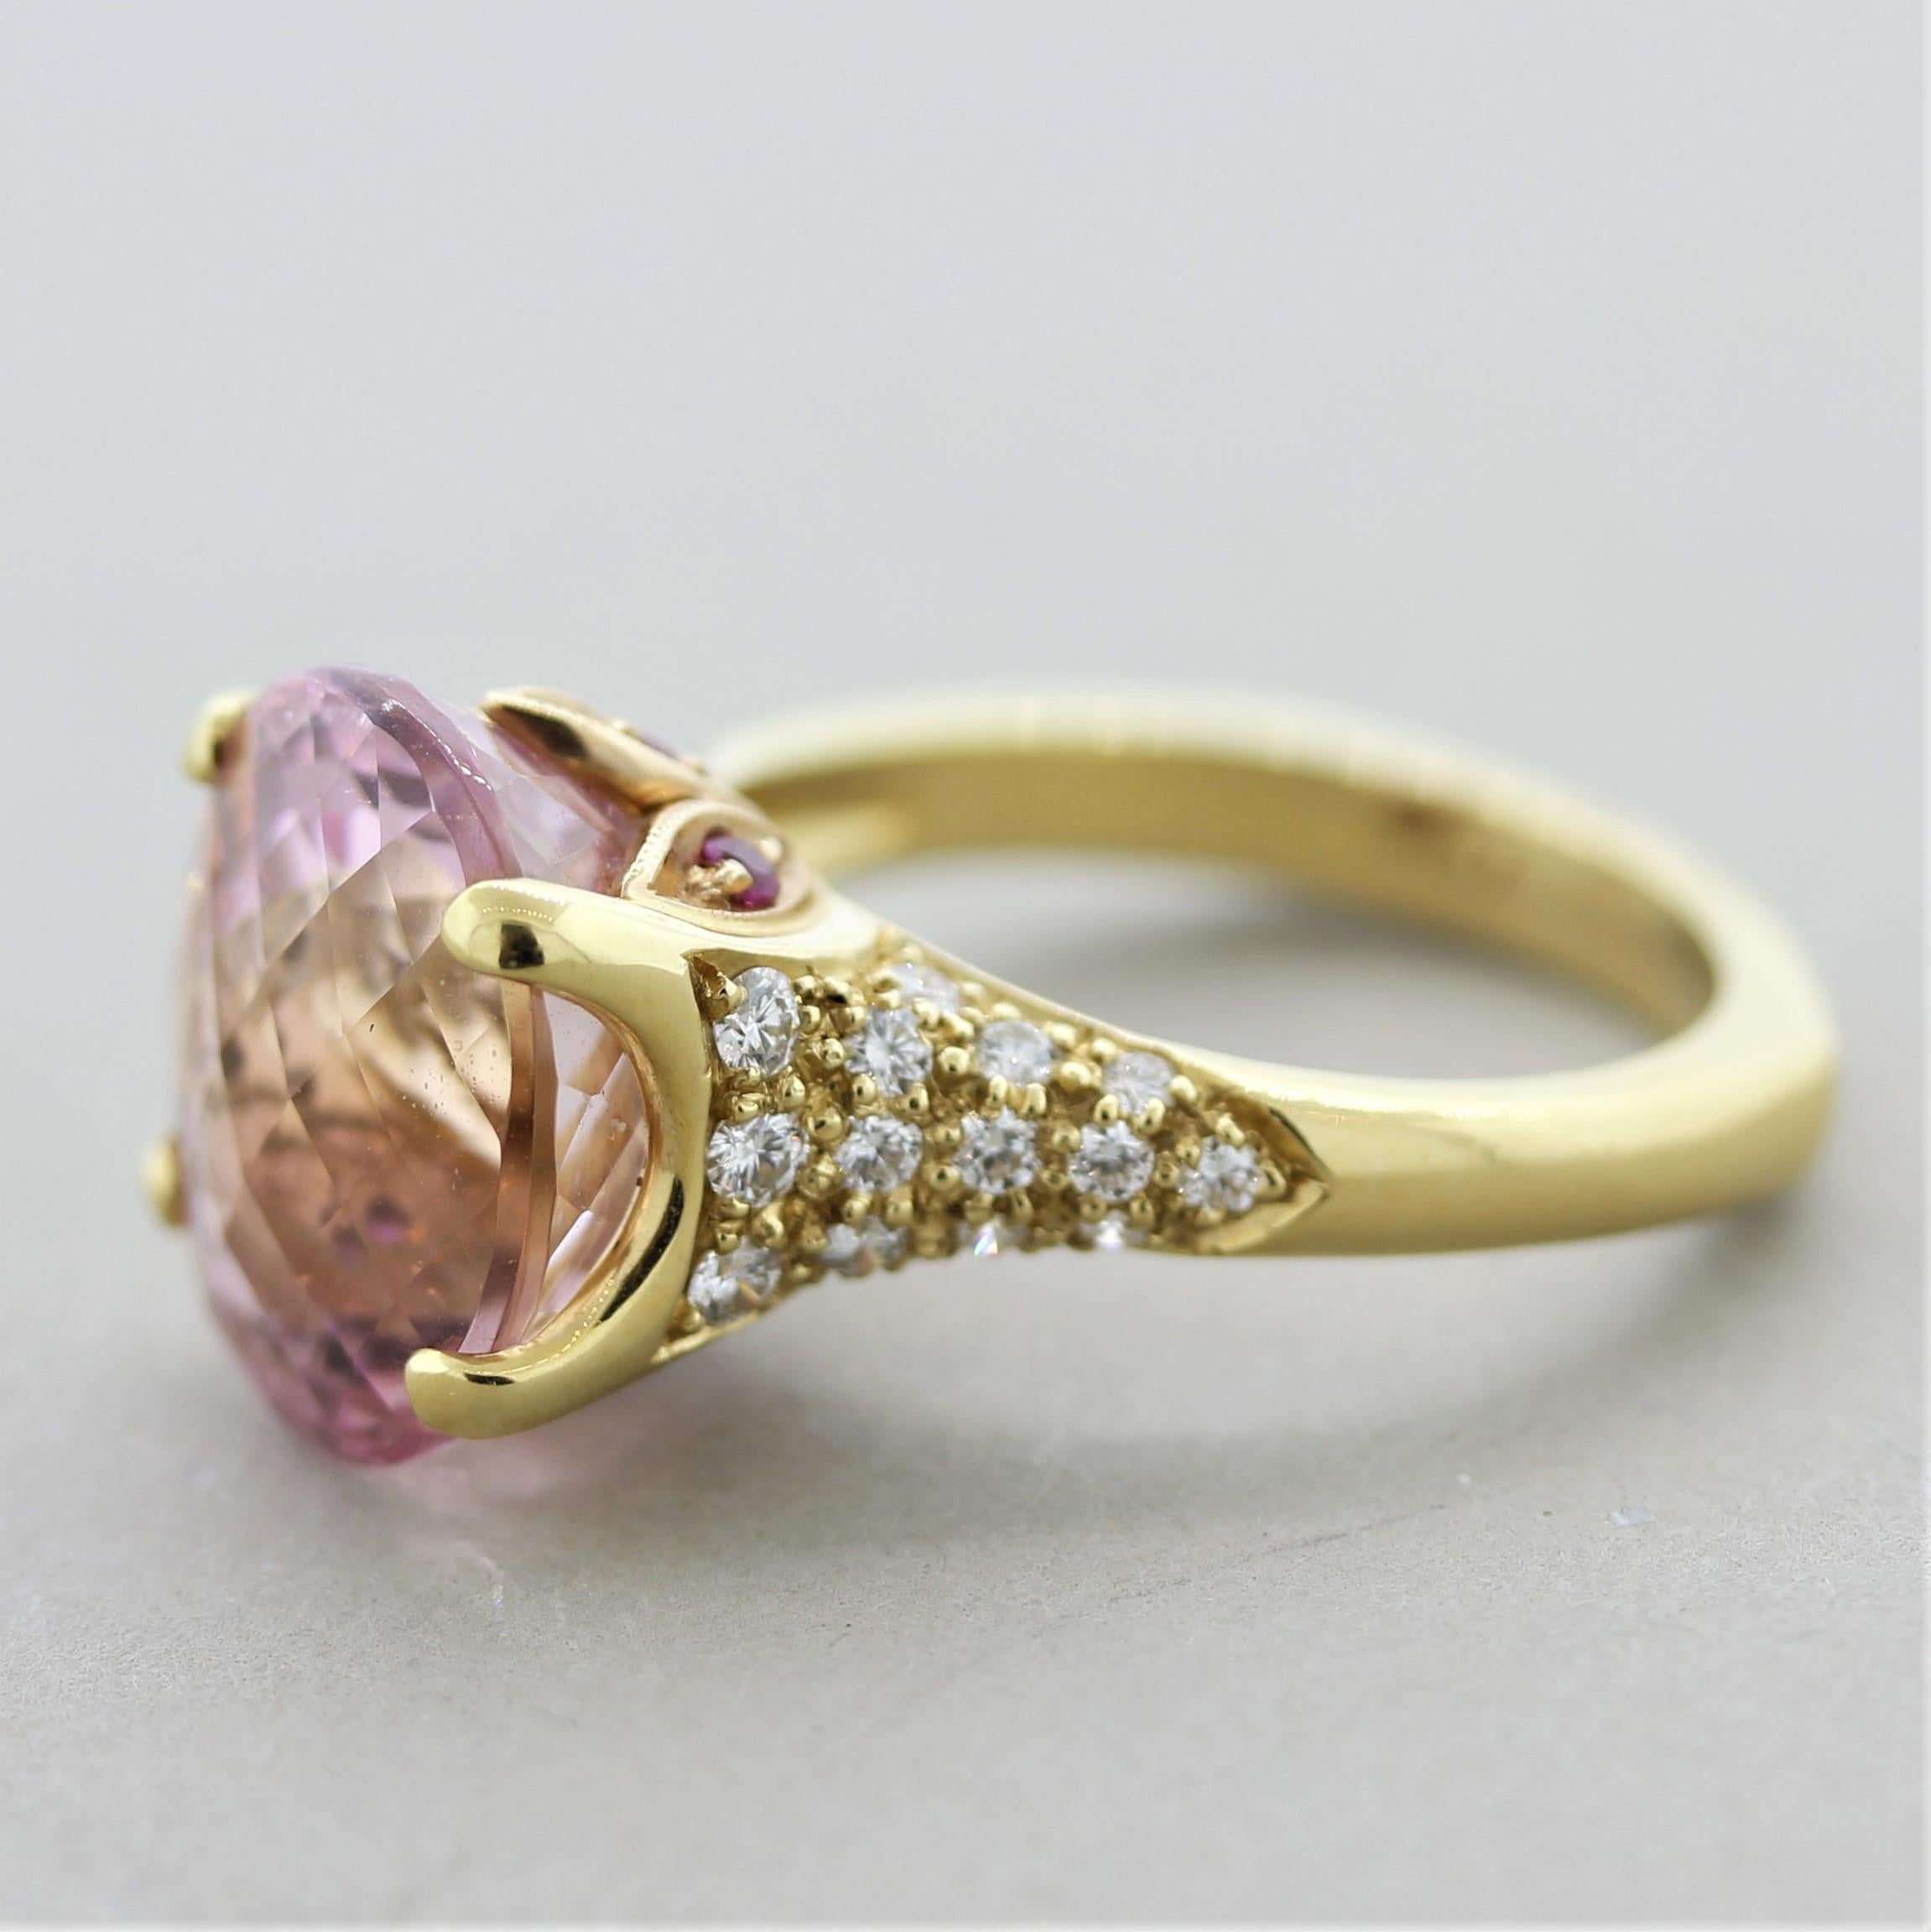 Oval Cut Pink Tourmaline Diamond Gold Ring